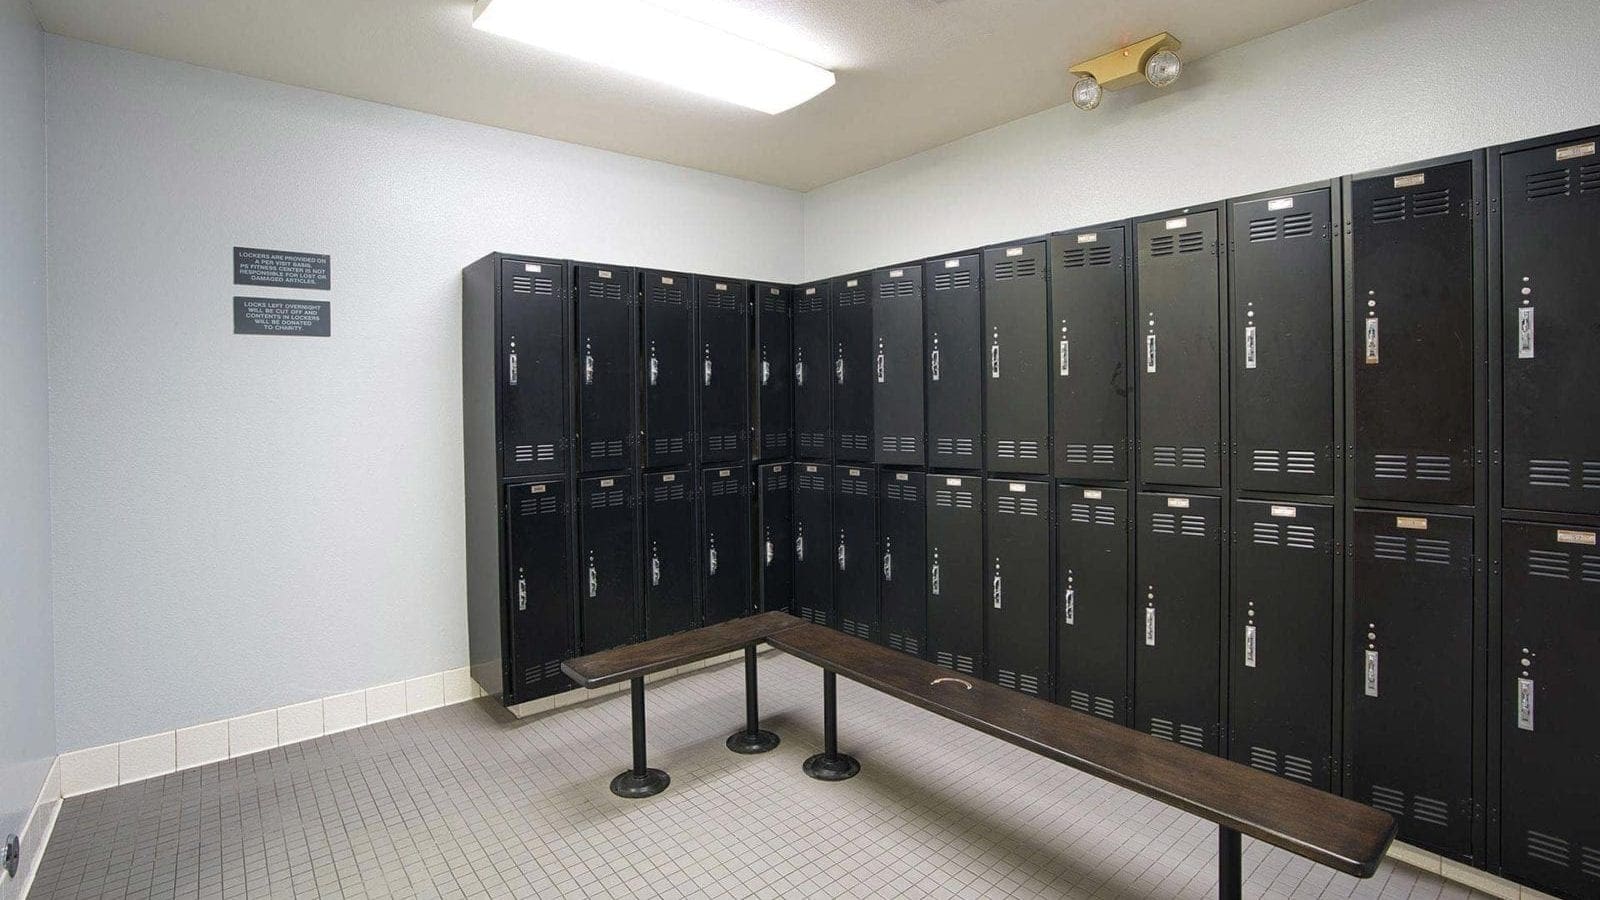 Kearny Mesa Business Park locker room photo